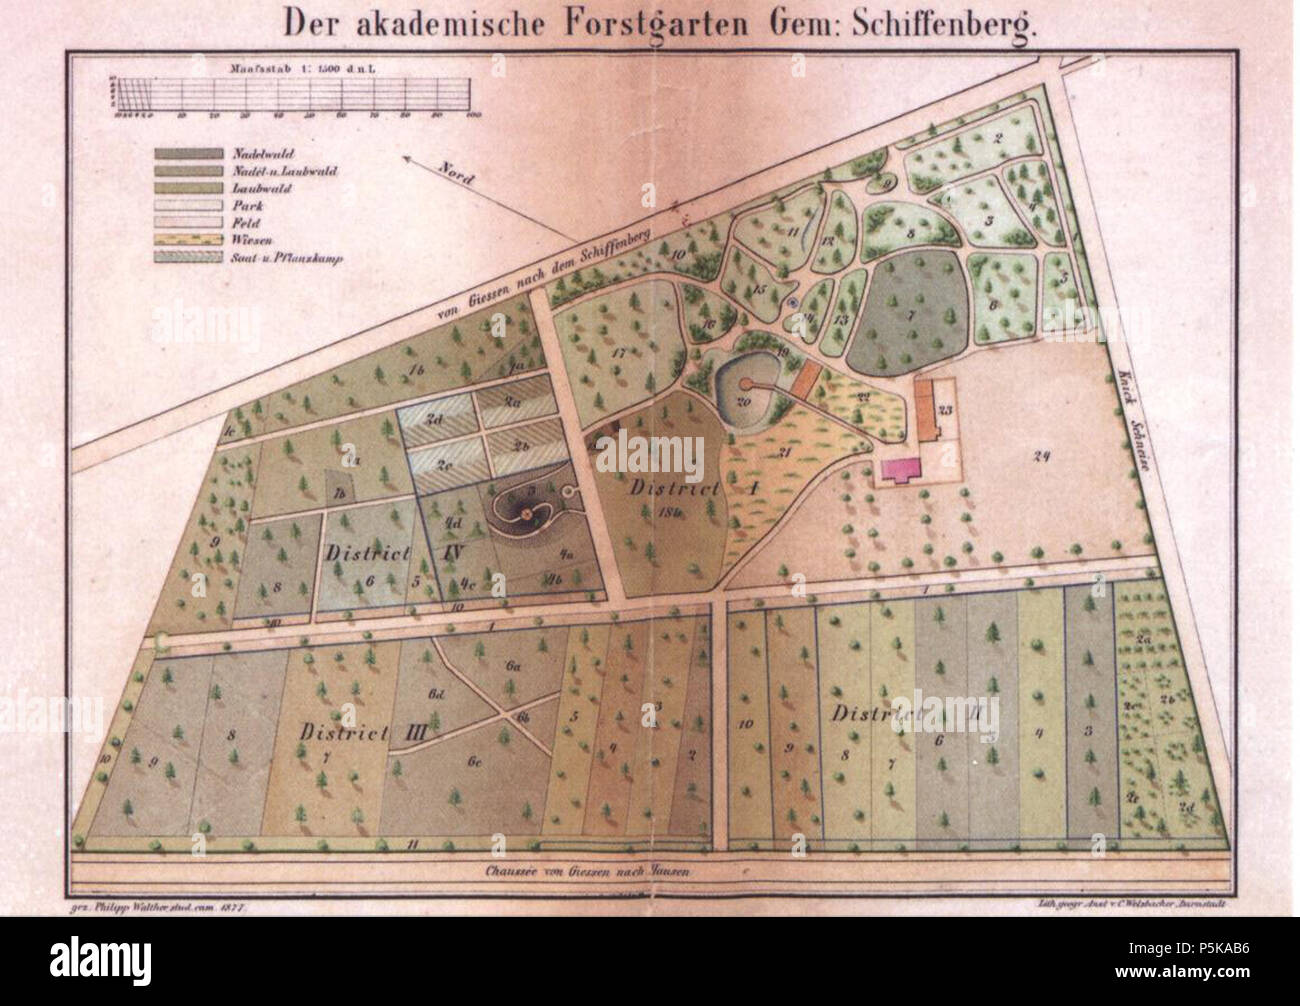 N/A. Deutsch: Plan des Akademischen Forstgartens Gießen von 1877. Die mit 'Chaussee von Giessen nach Hausen' bezeichnete Straße an der Kartenbasis ist heute der Schiffenberger Weg (L 3131). An dem Abzweig von der Straße in der Park (in der Zeichnung nach oben) befindet sich heute eine Bushaltestelle 50°3328N 8°4248E / 50.55769°N 8.713255°E / 50.55769; 8.713255 (Name: Gießen Forstgarten) . 1877. Der Garten wurde 1870 und 1877 durch die Geometer Walther und Buttron vermessen, die Karte vom Studenten der Kameralistik Philipp Walther gezeichnet 71 Akademischer Forstgarten Giessen Plan Stock Photo